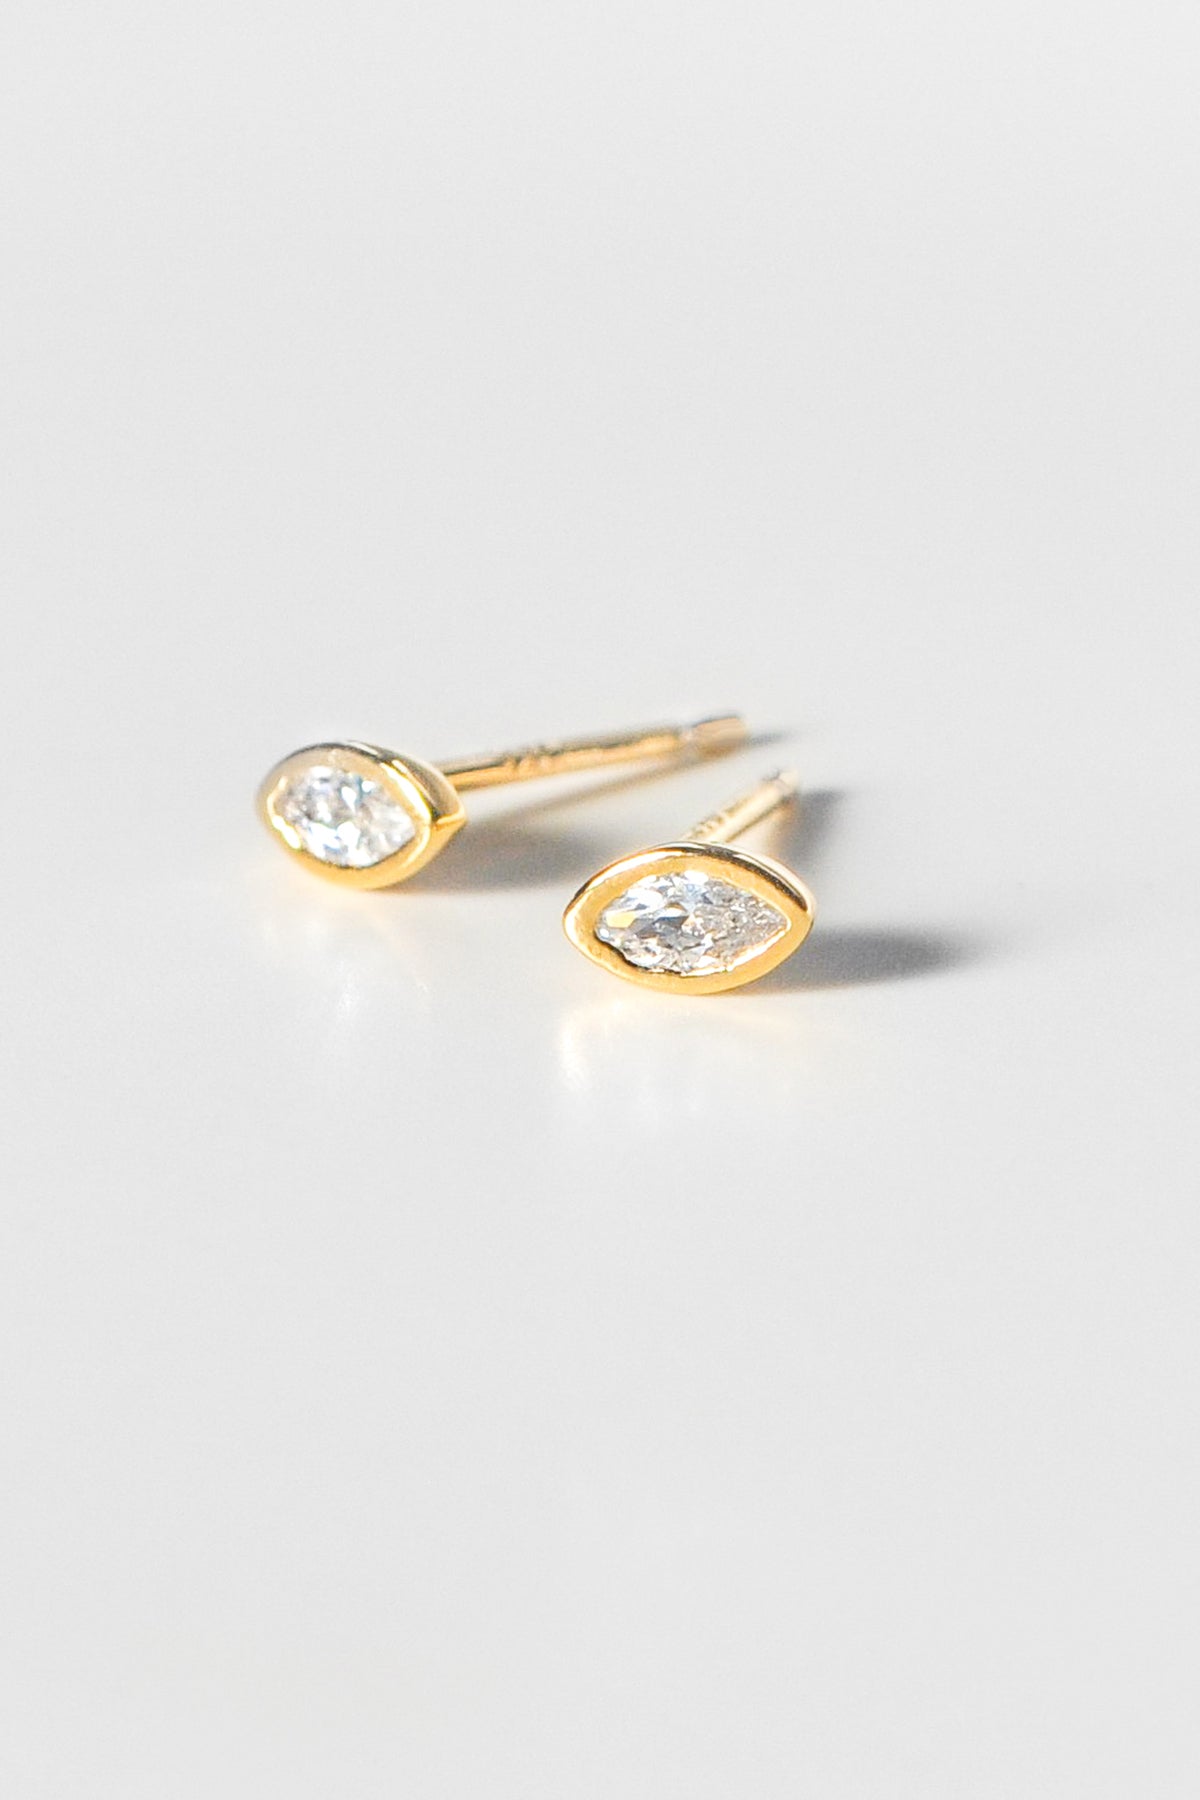   Iris Earrings Gold by Thatch 